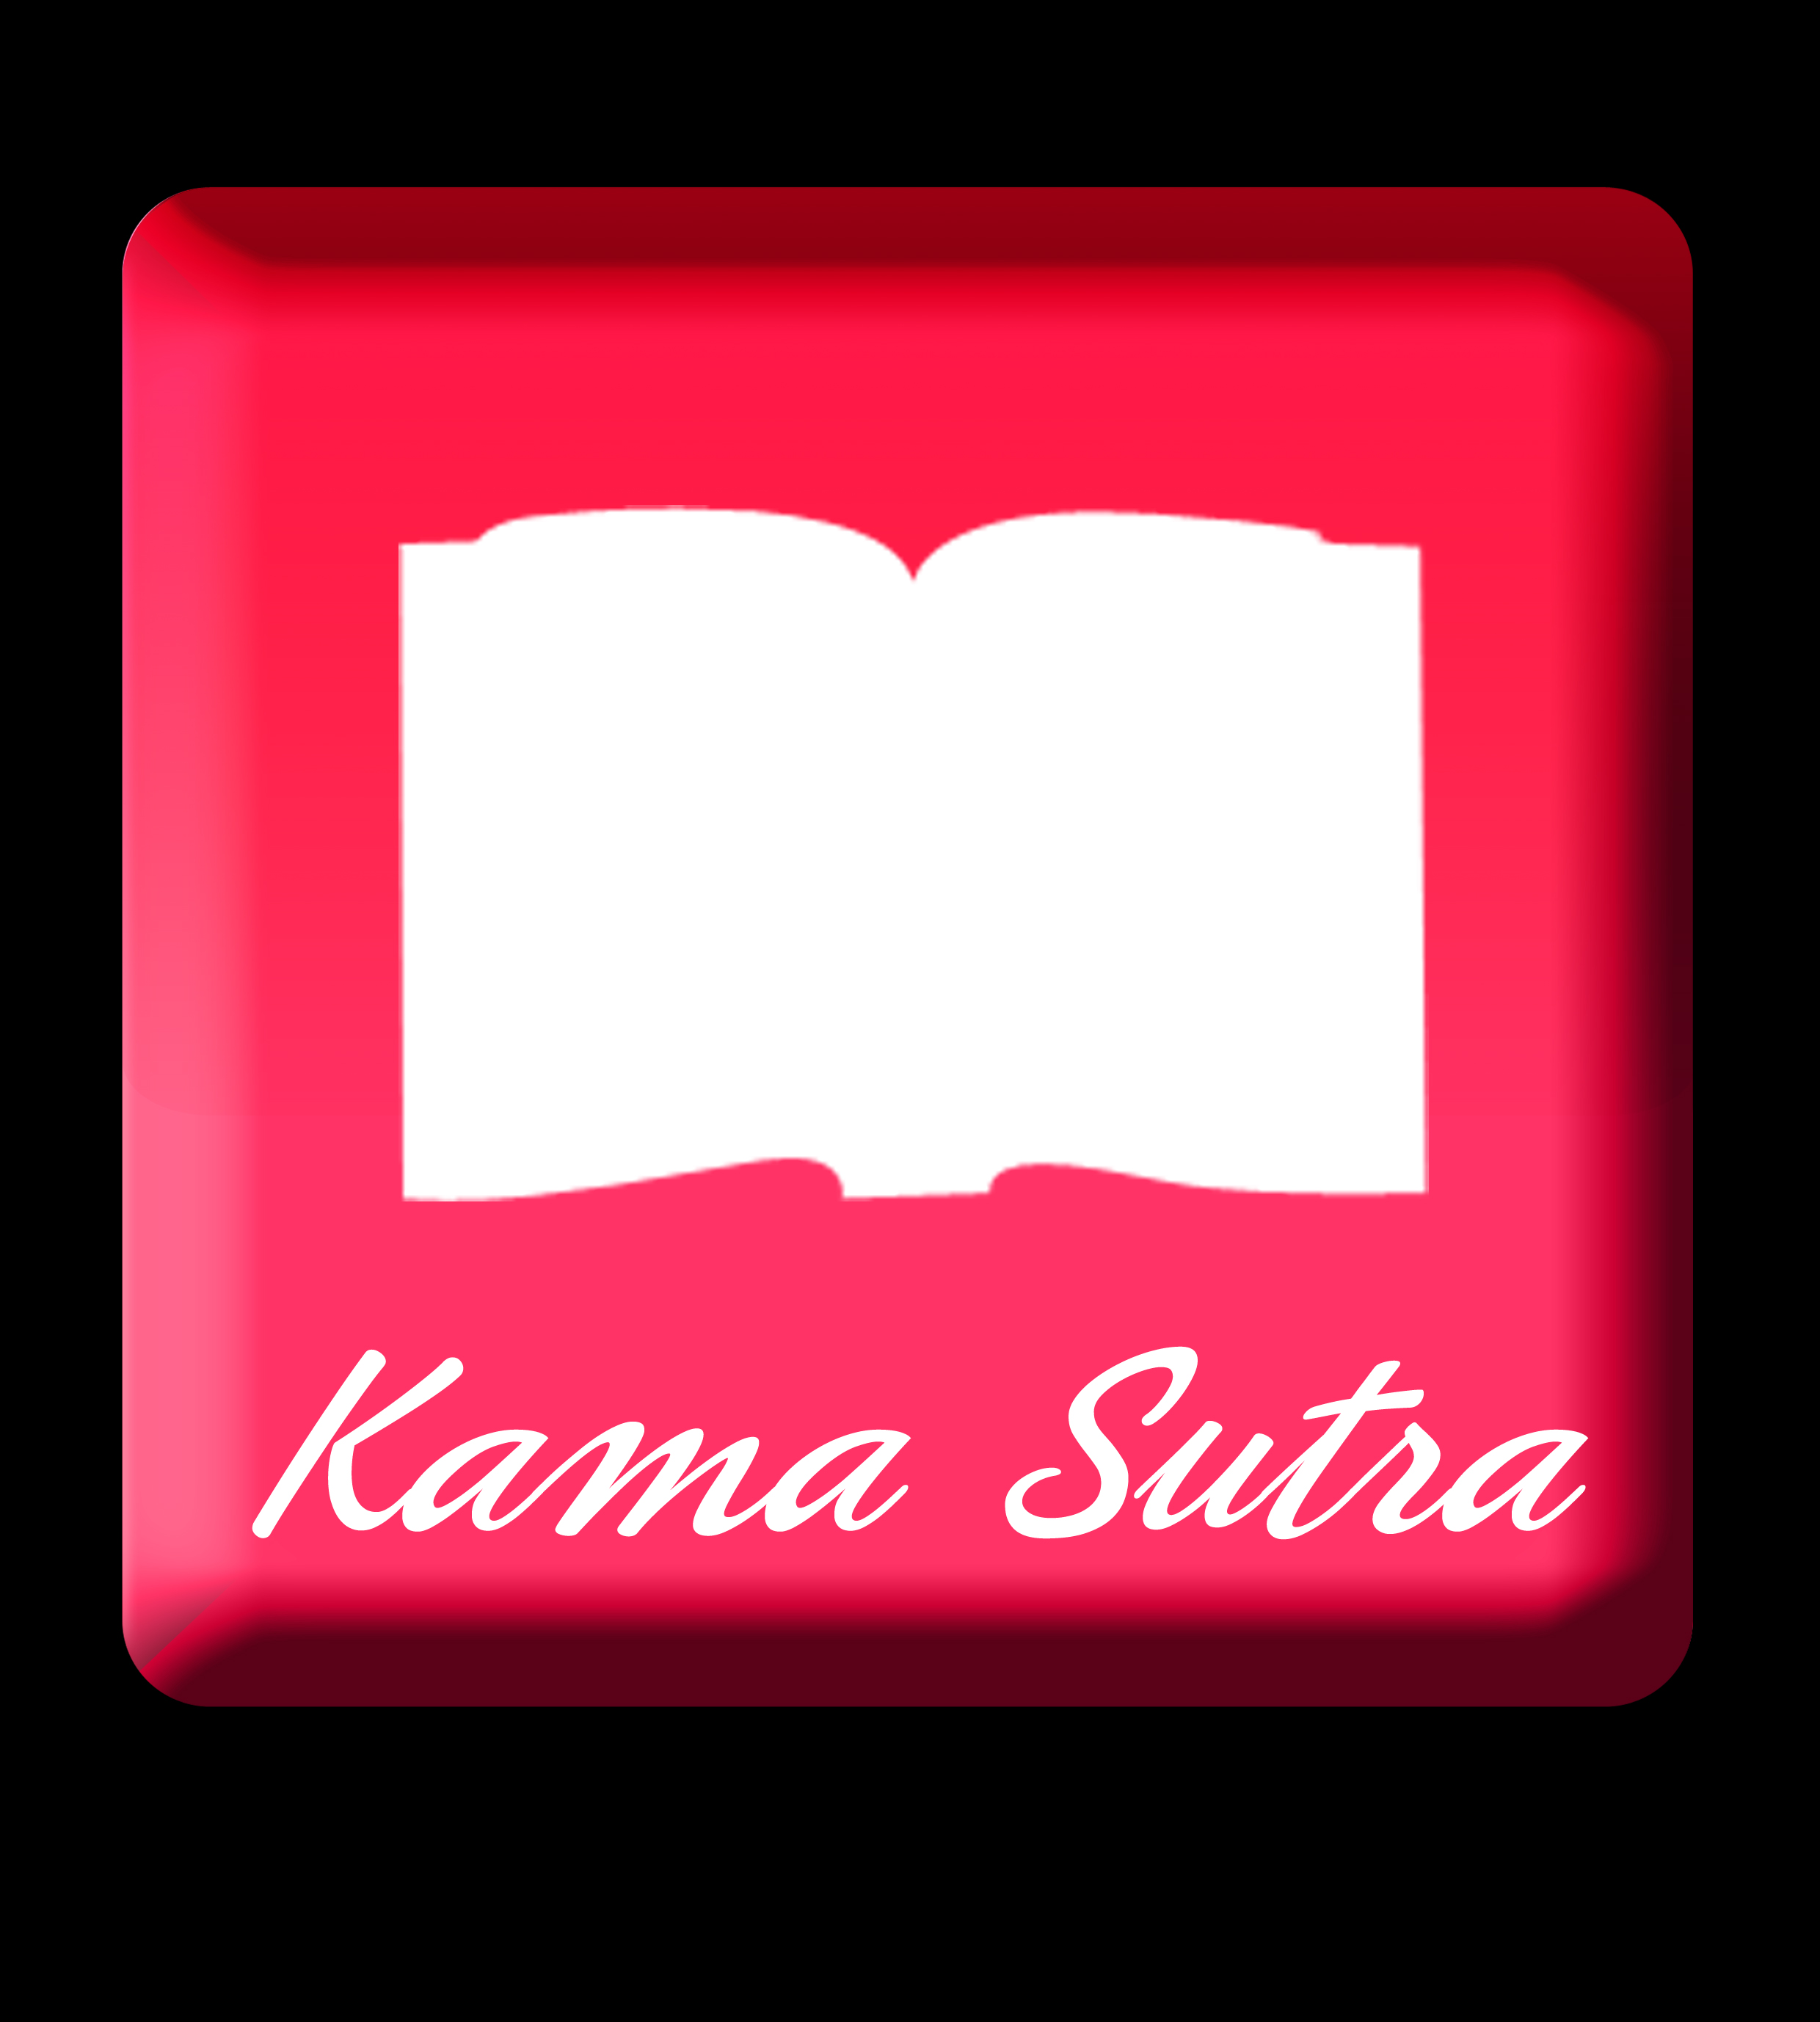 Kama Sutra